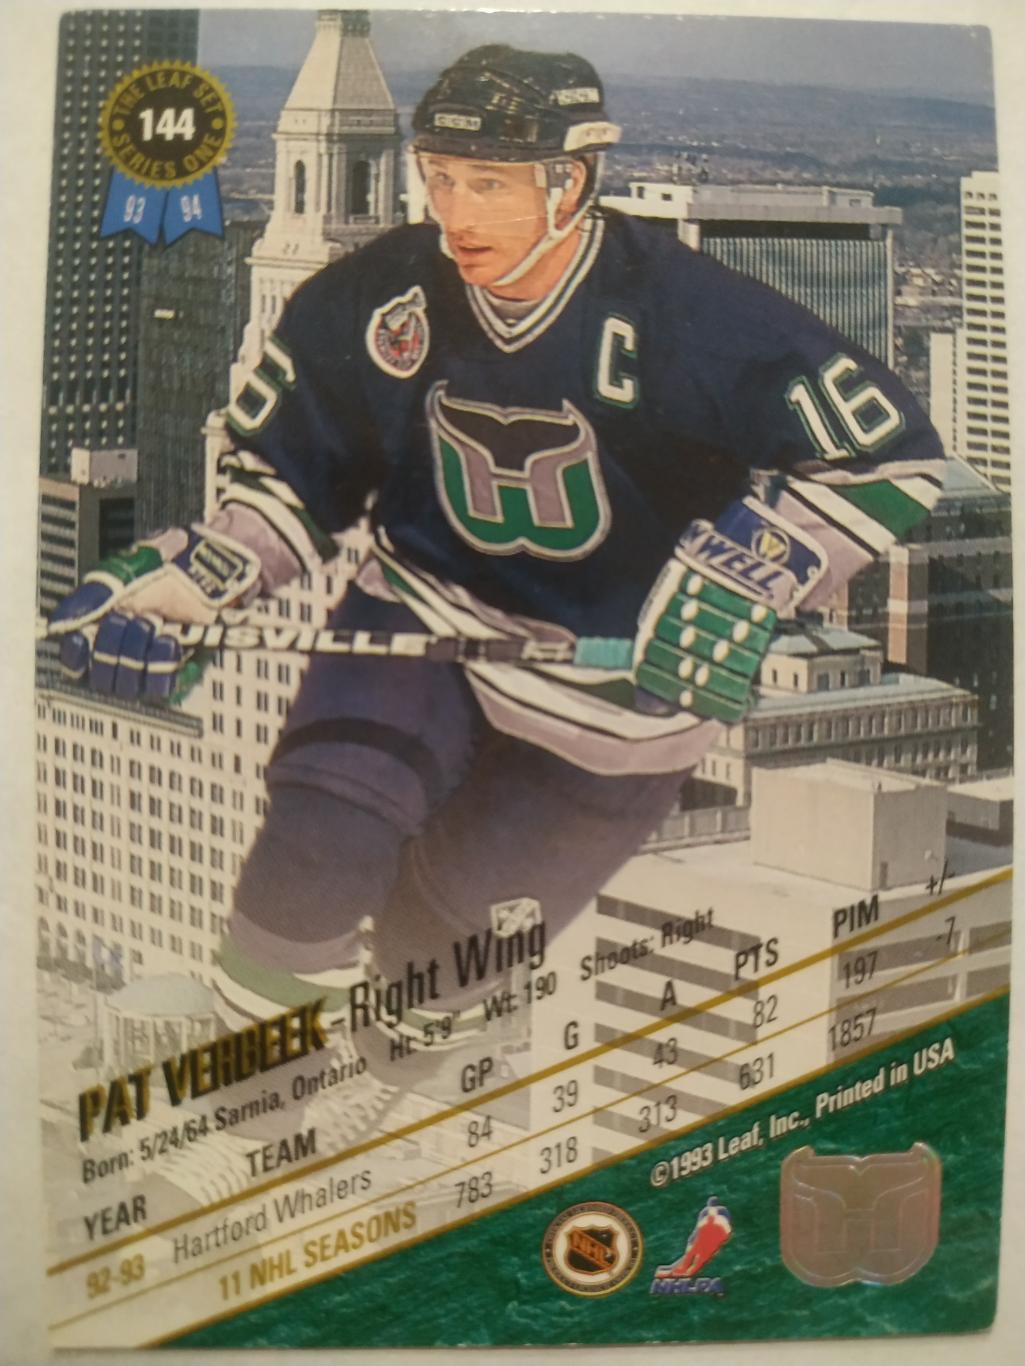 ХОККЕЙ КАРТОЧКА НХЛ LEAF SET SERIES ONE 1993-94 PAT VERBEEK HARFORD WHALERS #144 1